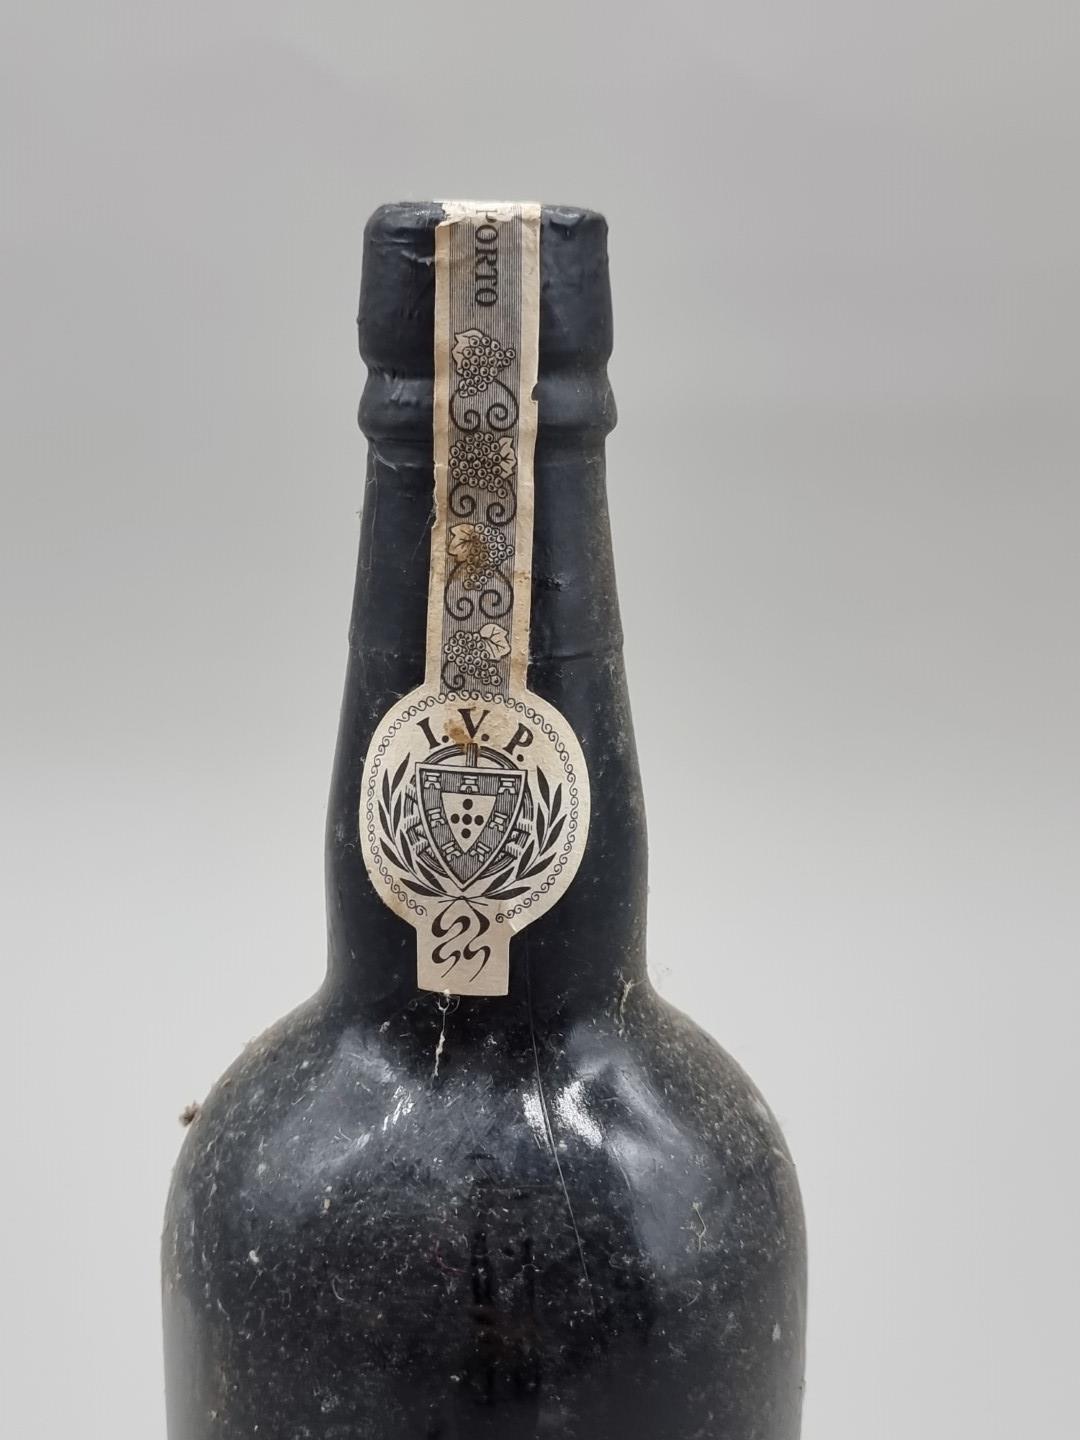 A bottle of Quinta Do Noval 1963 Vintage Port. - Image 5 of 6